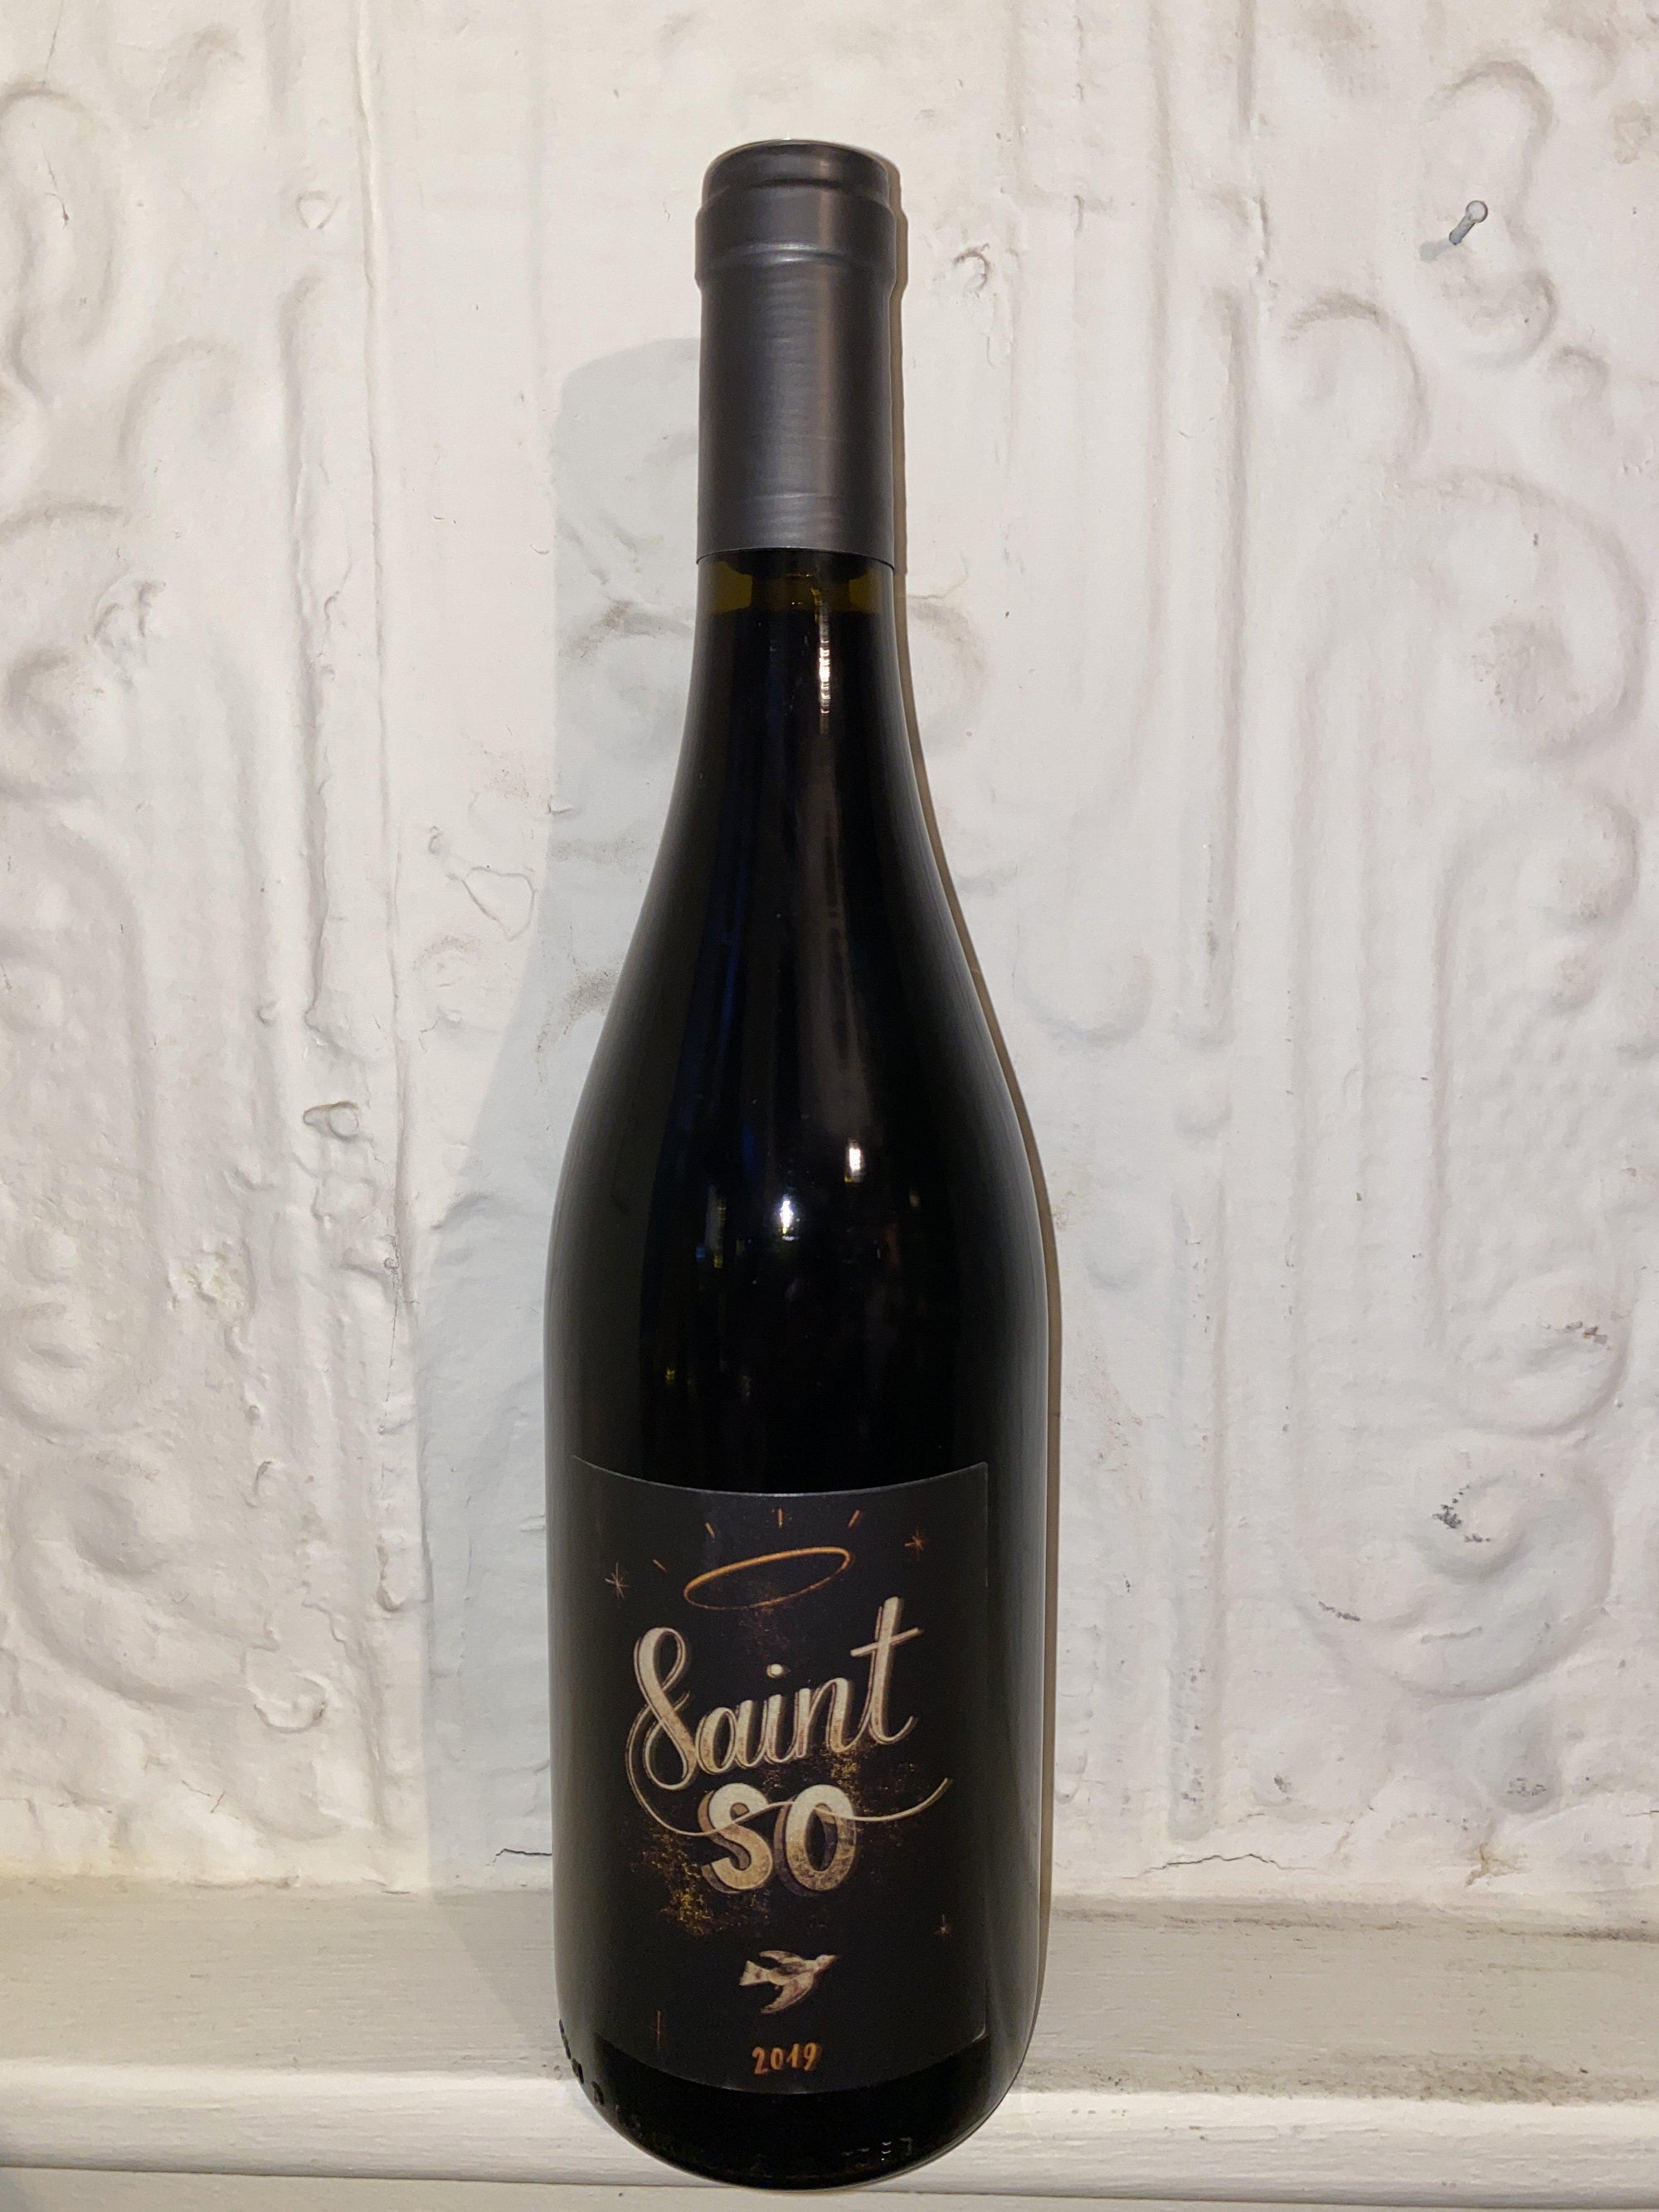 Saint So, Francois Ducrot 2019 (Languedoc, France)-Wine-Bibber & Bell